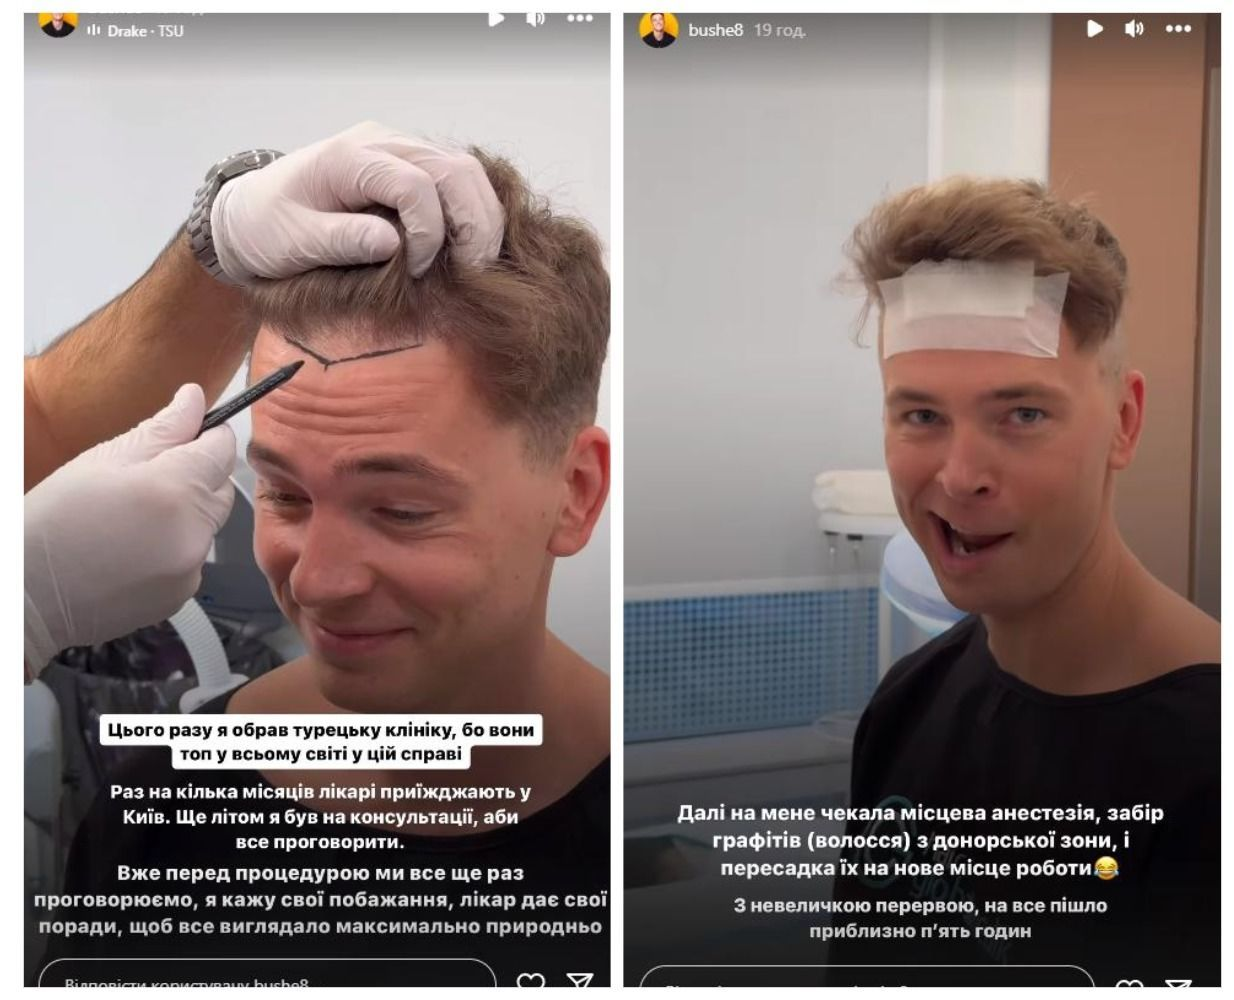 Богдан Буше розкриває весь процес пересадки волосся, стаючи прикладом сміливого рішення. 